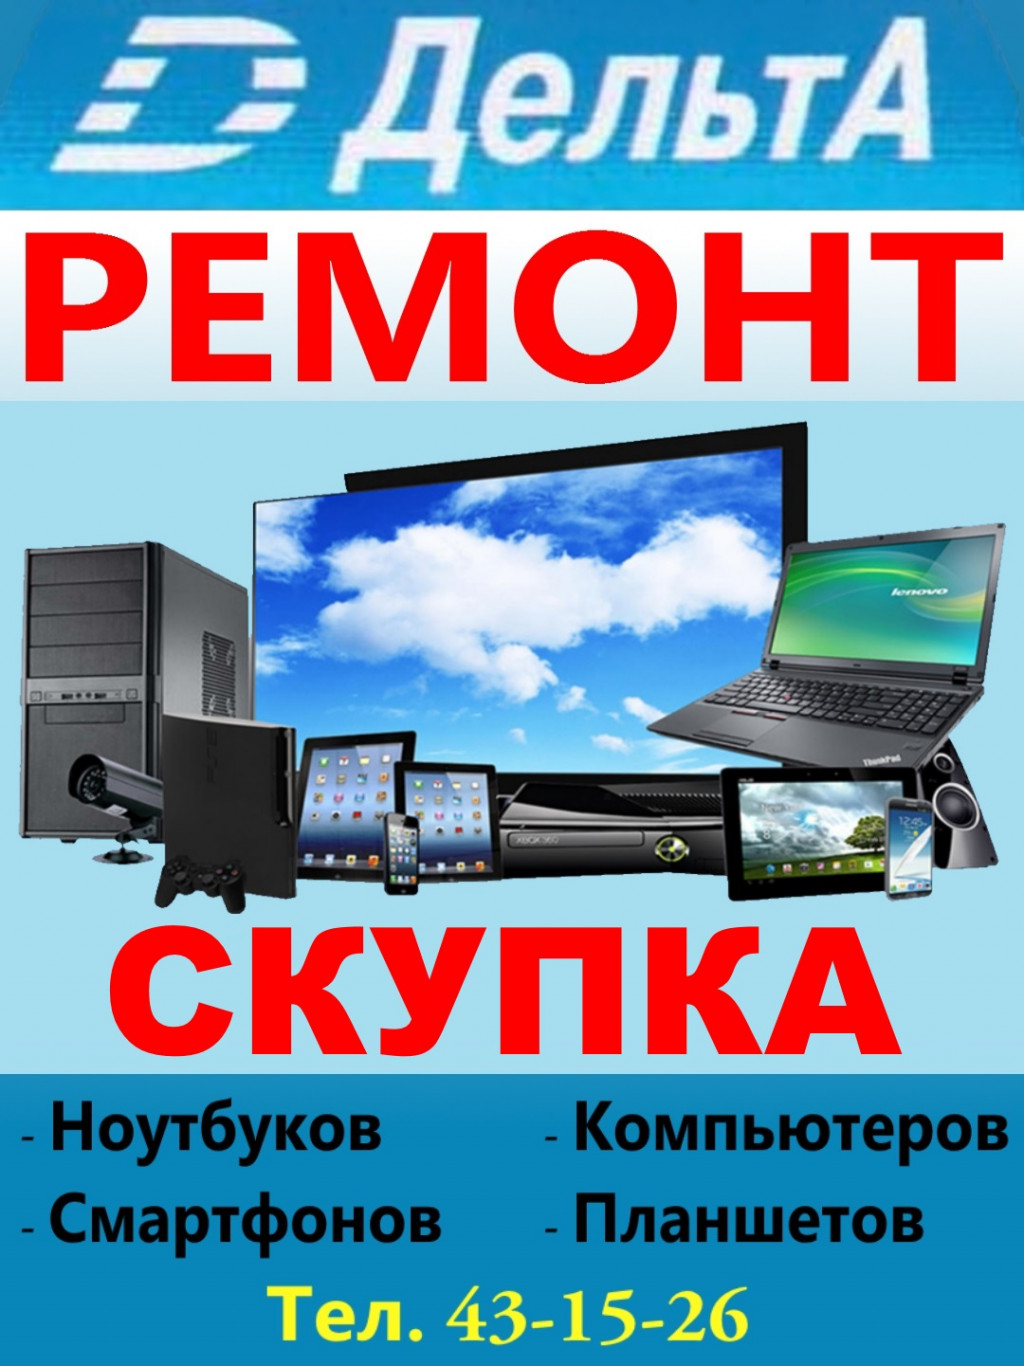 ДельтА - Сервисный Центр  - ремонт цифровых фотоаппаратов  